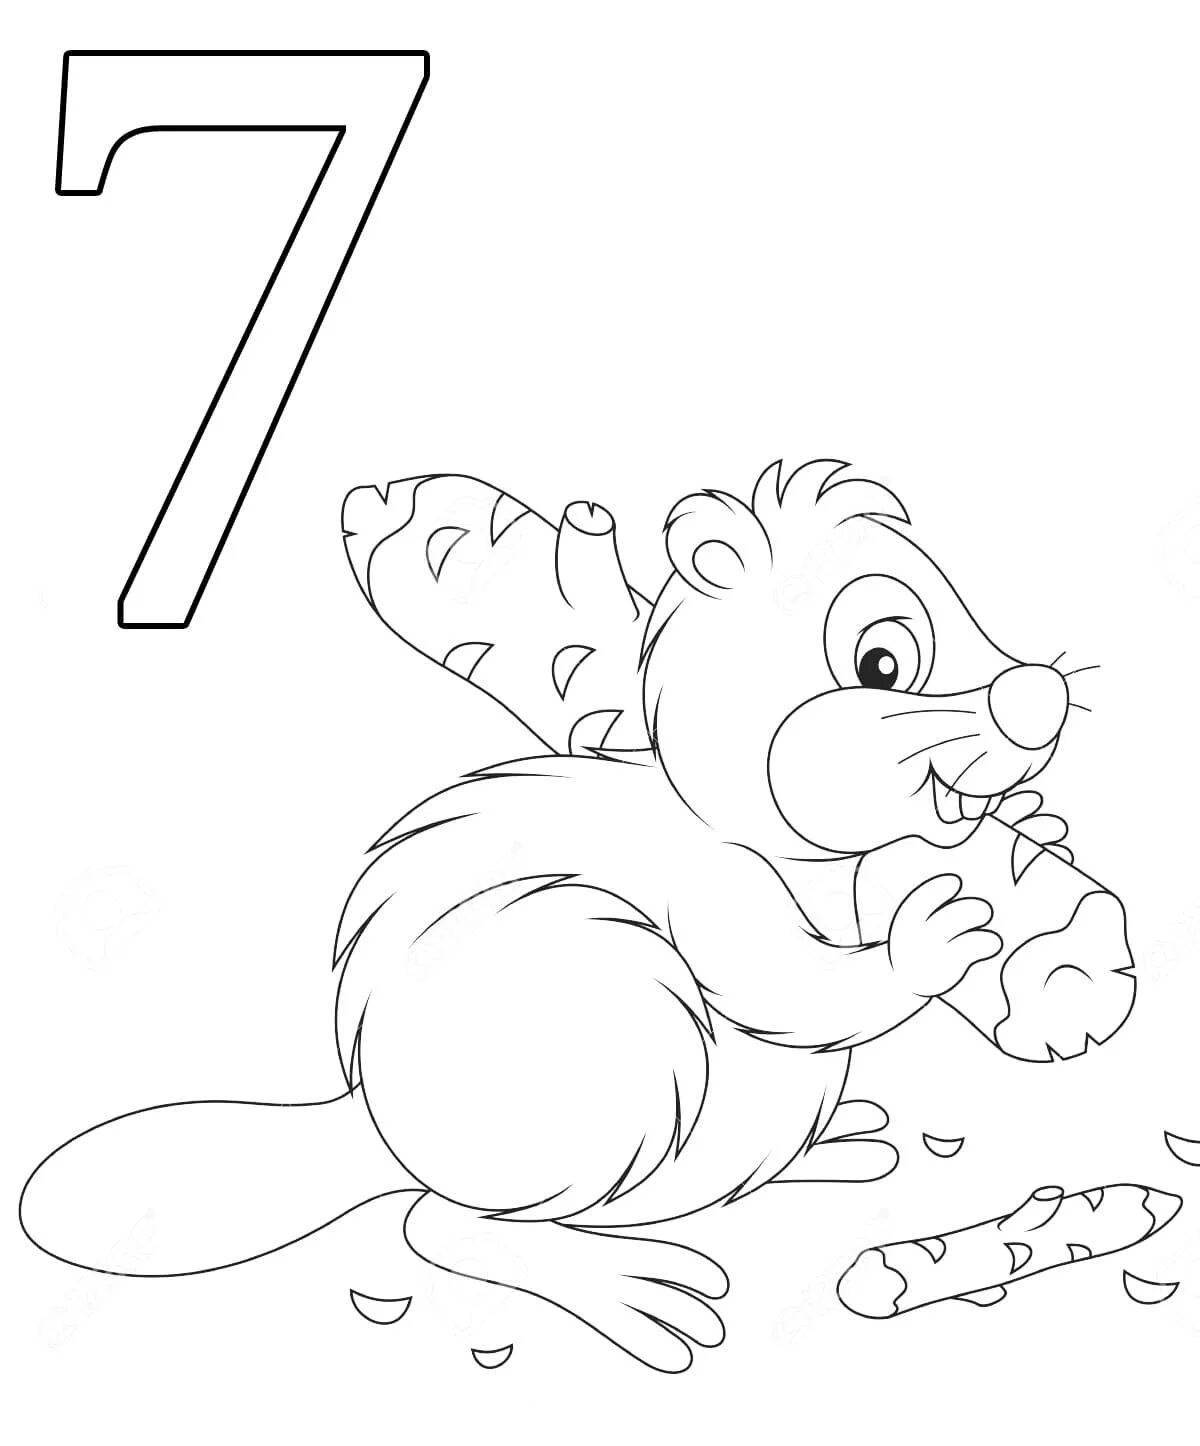 Number 7 for preschoolers #12